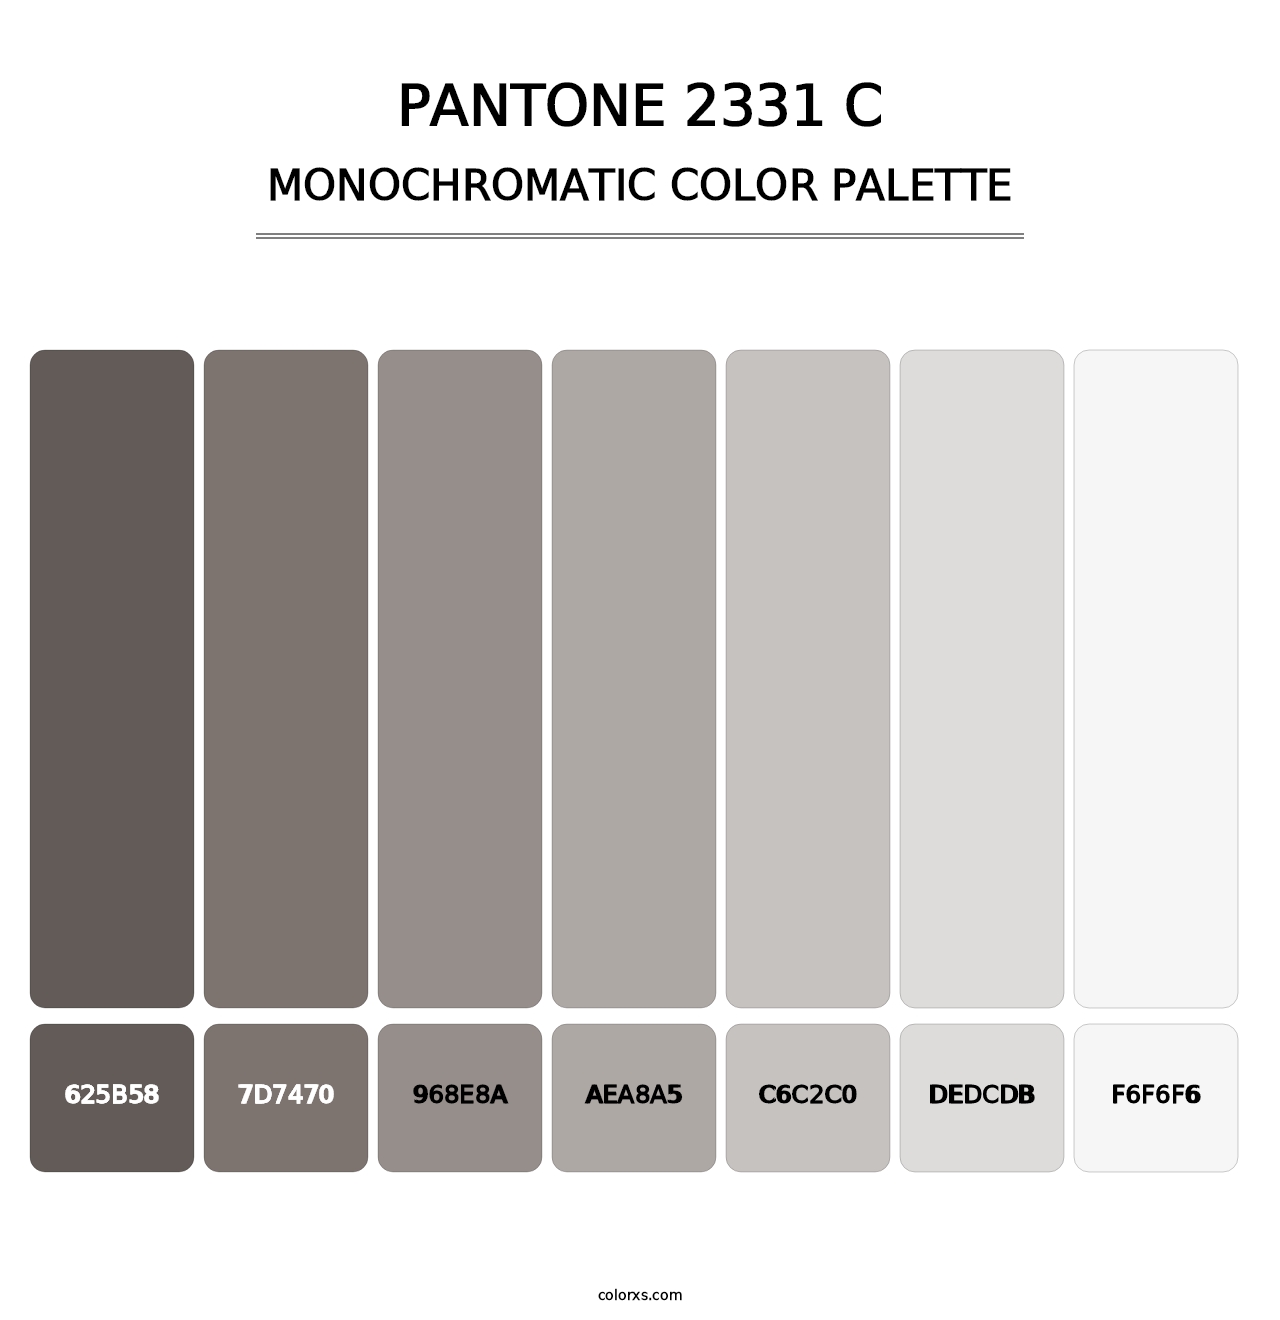 PANTONE 2331 C - Monochromatic Color Palette